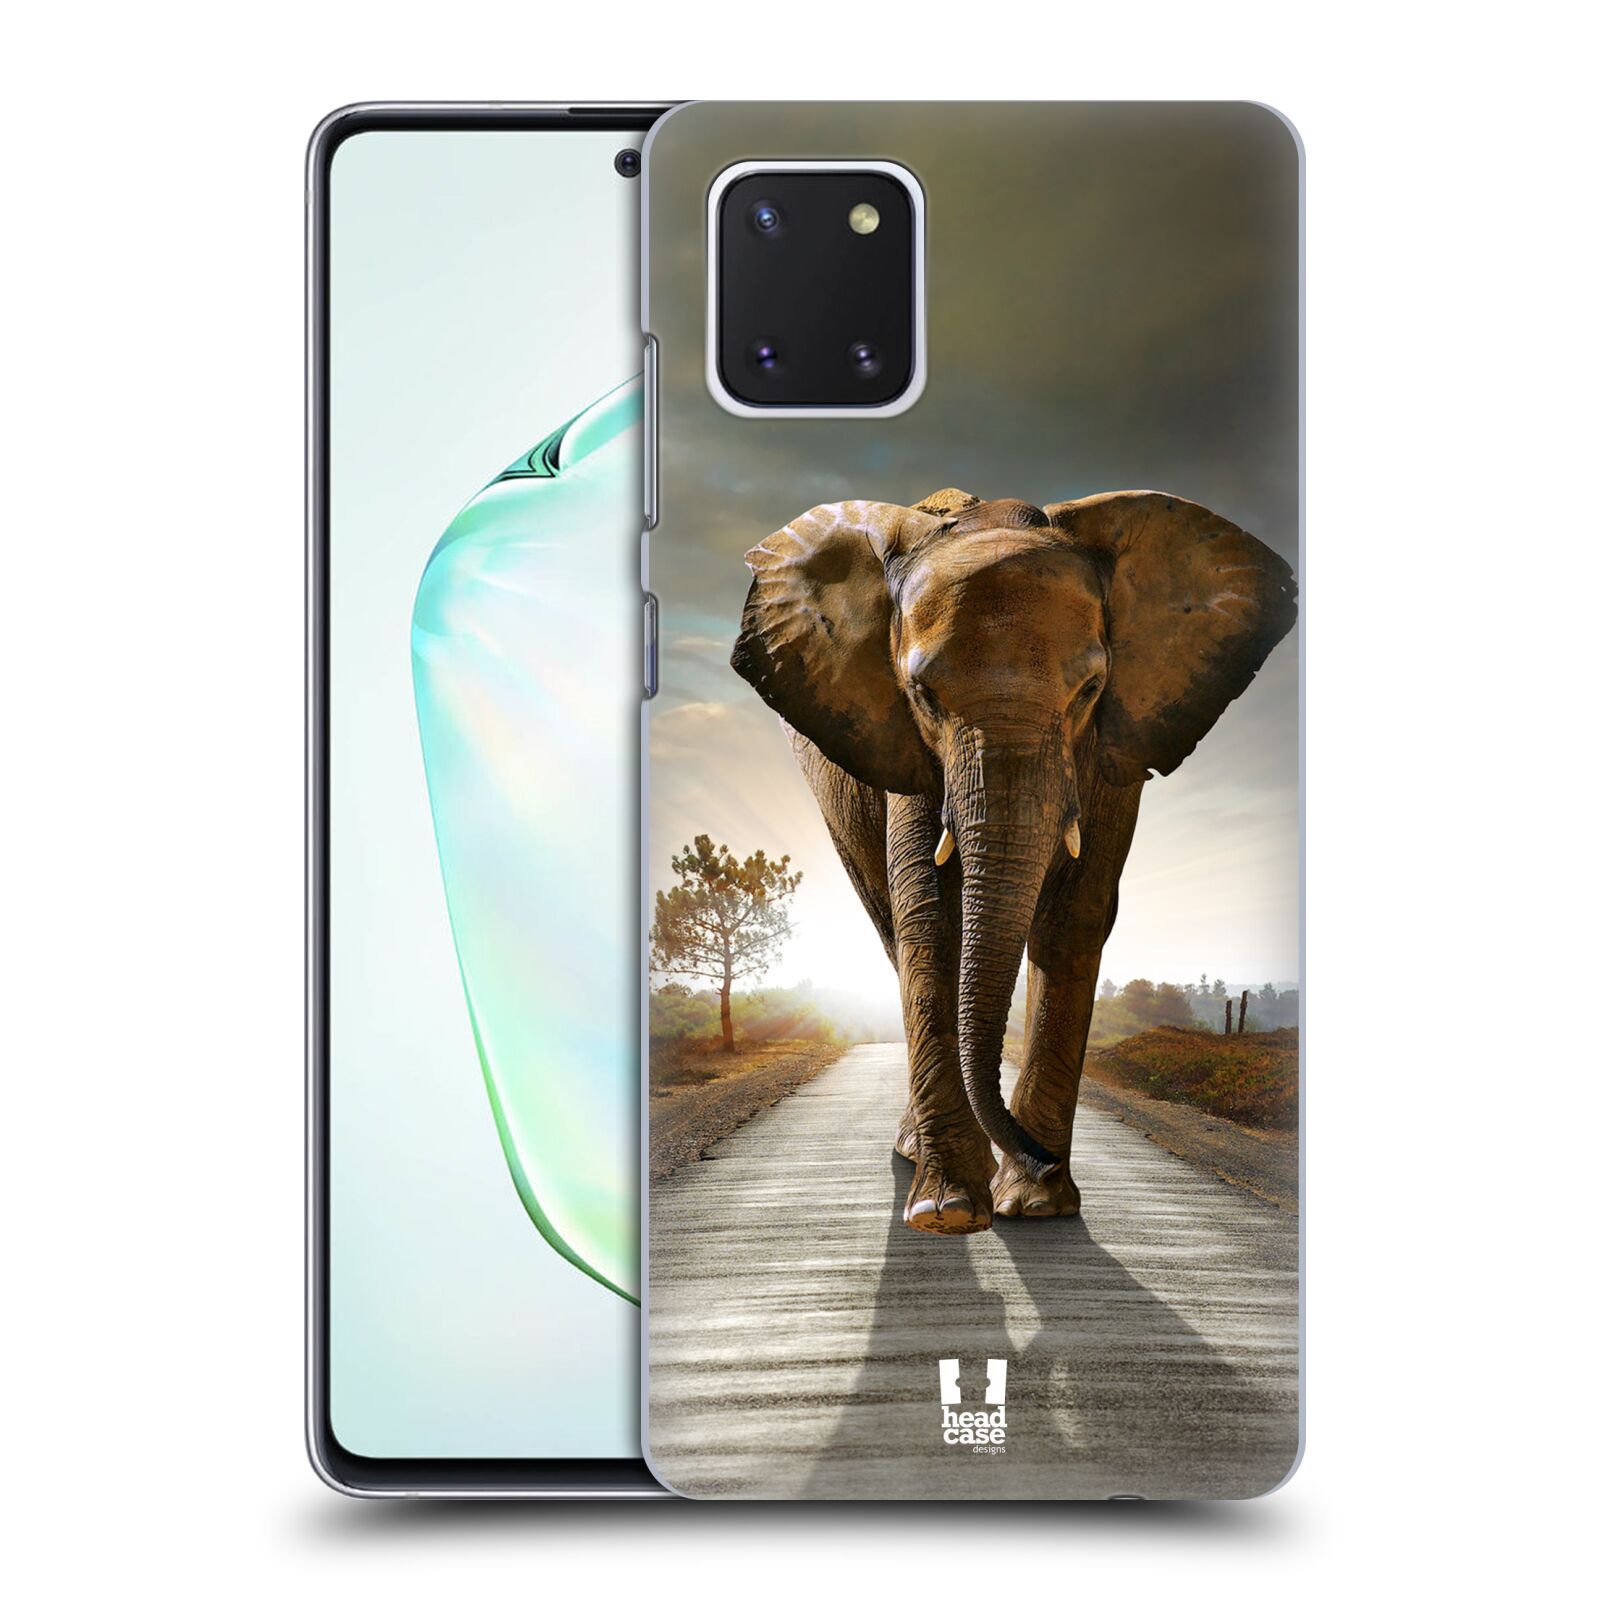 Zadní obal pro mobil Samsung Galaxy Note 10 Lite - HEAD CASE - Svět zvířat kráčející slon